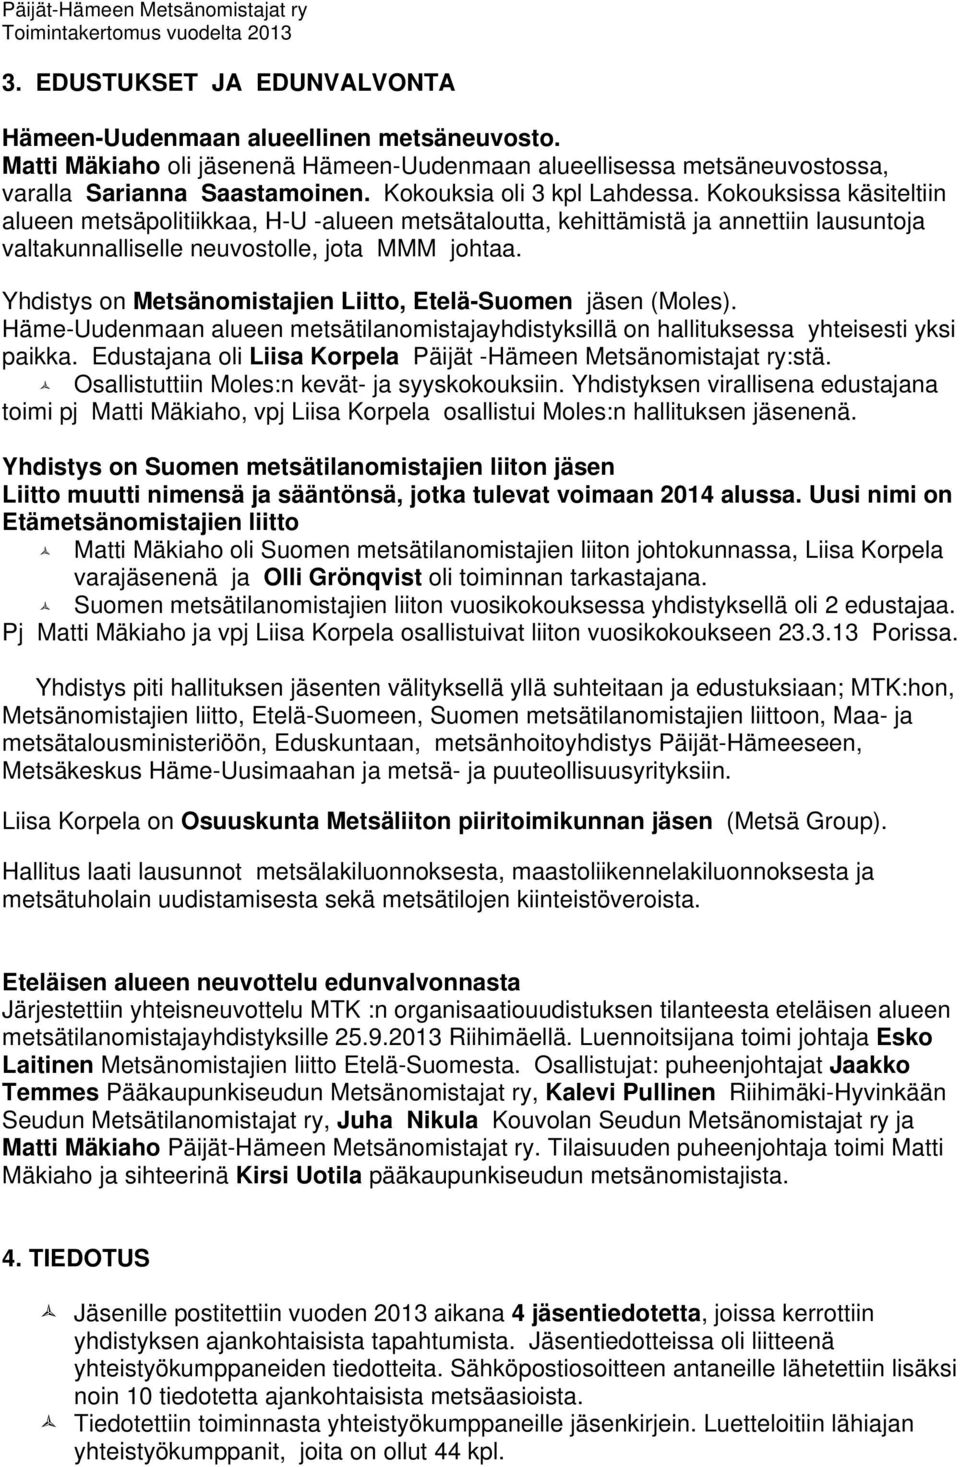 Yhdistys on Metsänomistajien Liitto, Etelä-Suomen jäsen (Moles). Häme-Uudenmaan alueen metsätilanomistajayhdistyksillä on hallituksessa yhteisesti yksi paikka.